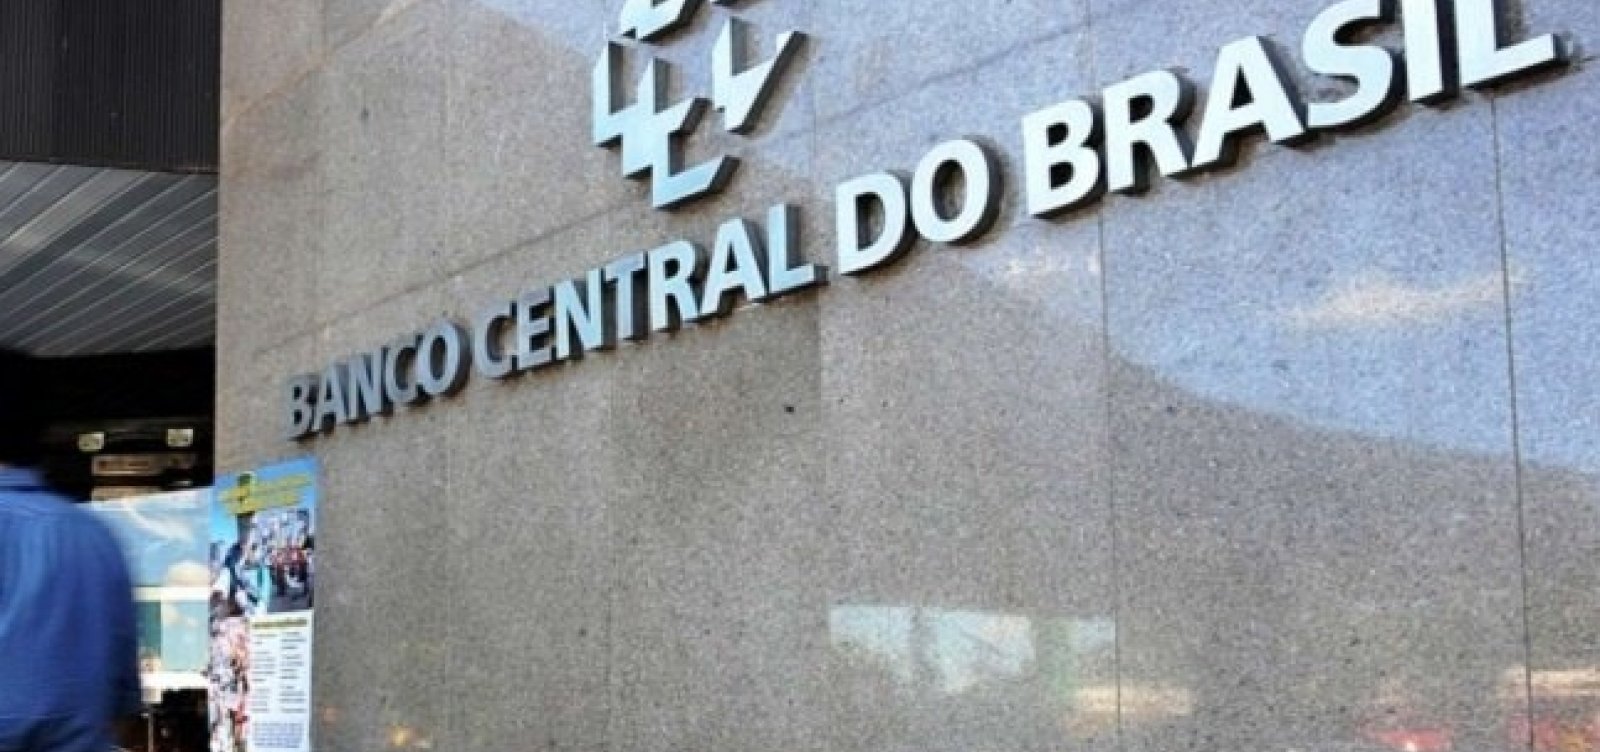 Banco Central teve lucro de R$ 470 bilhões em 2020